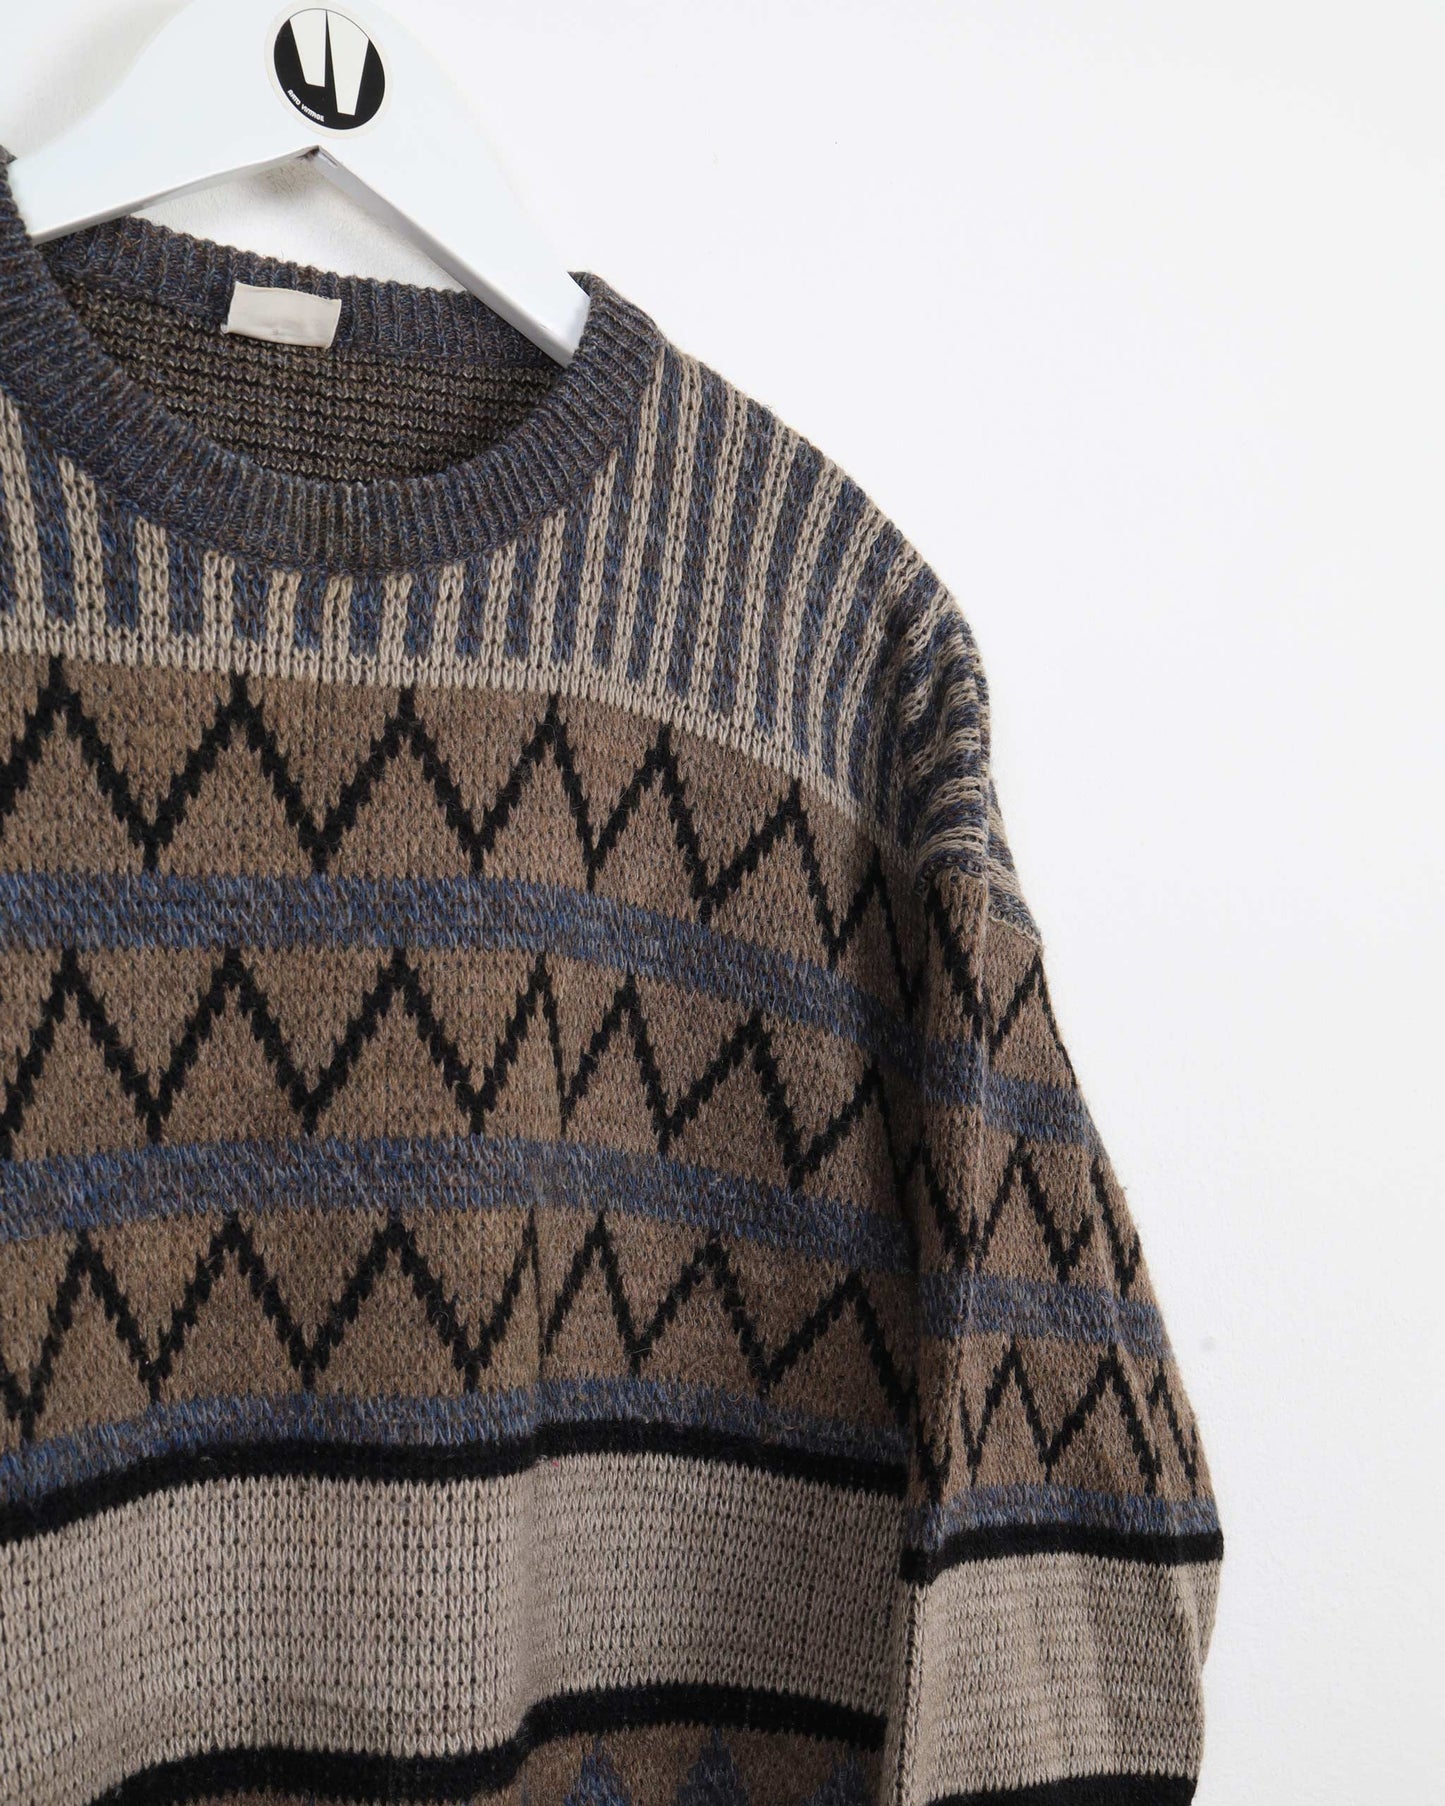 Maglione lavorato a maglia della collezione vintage Reemarc